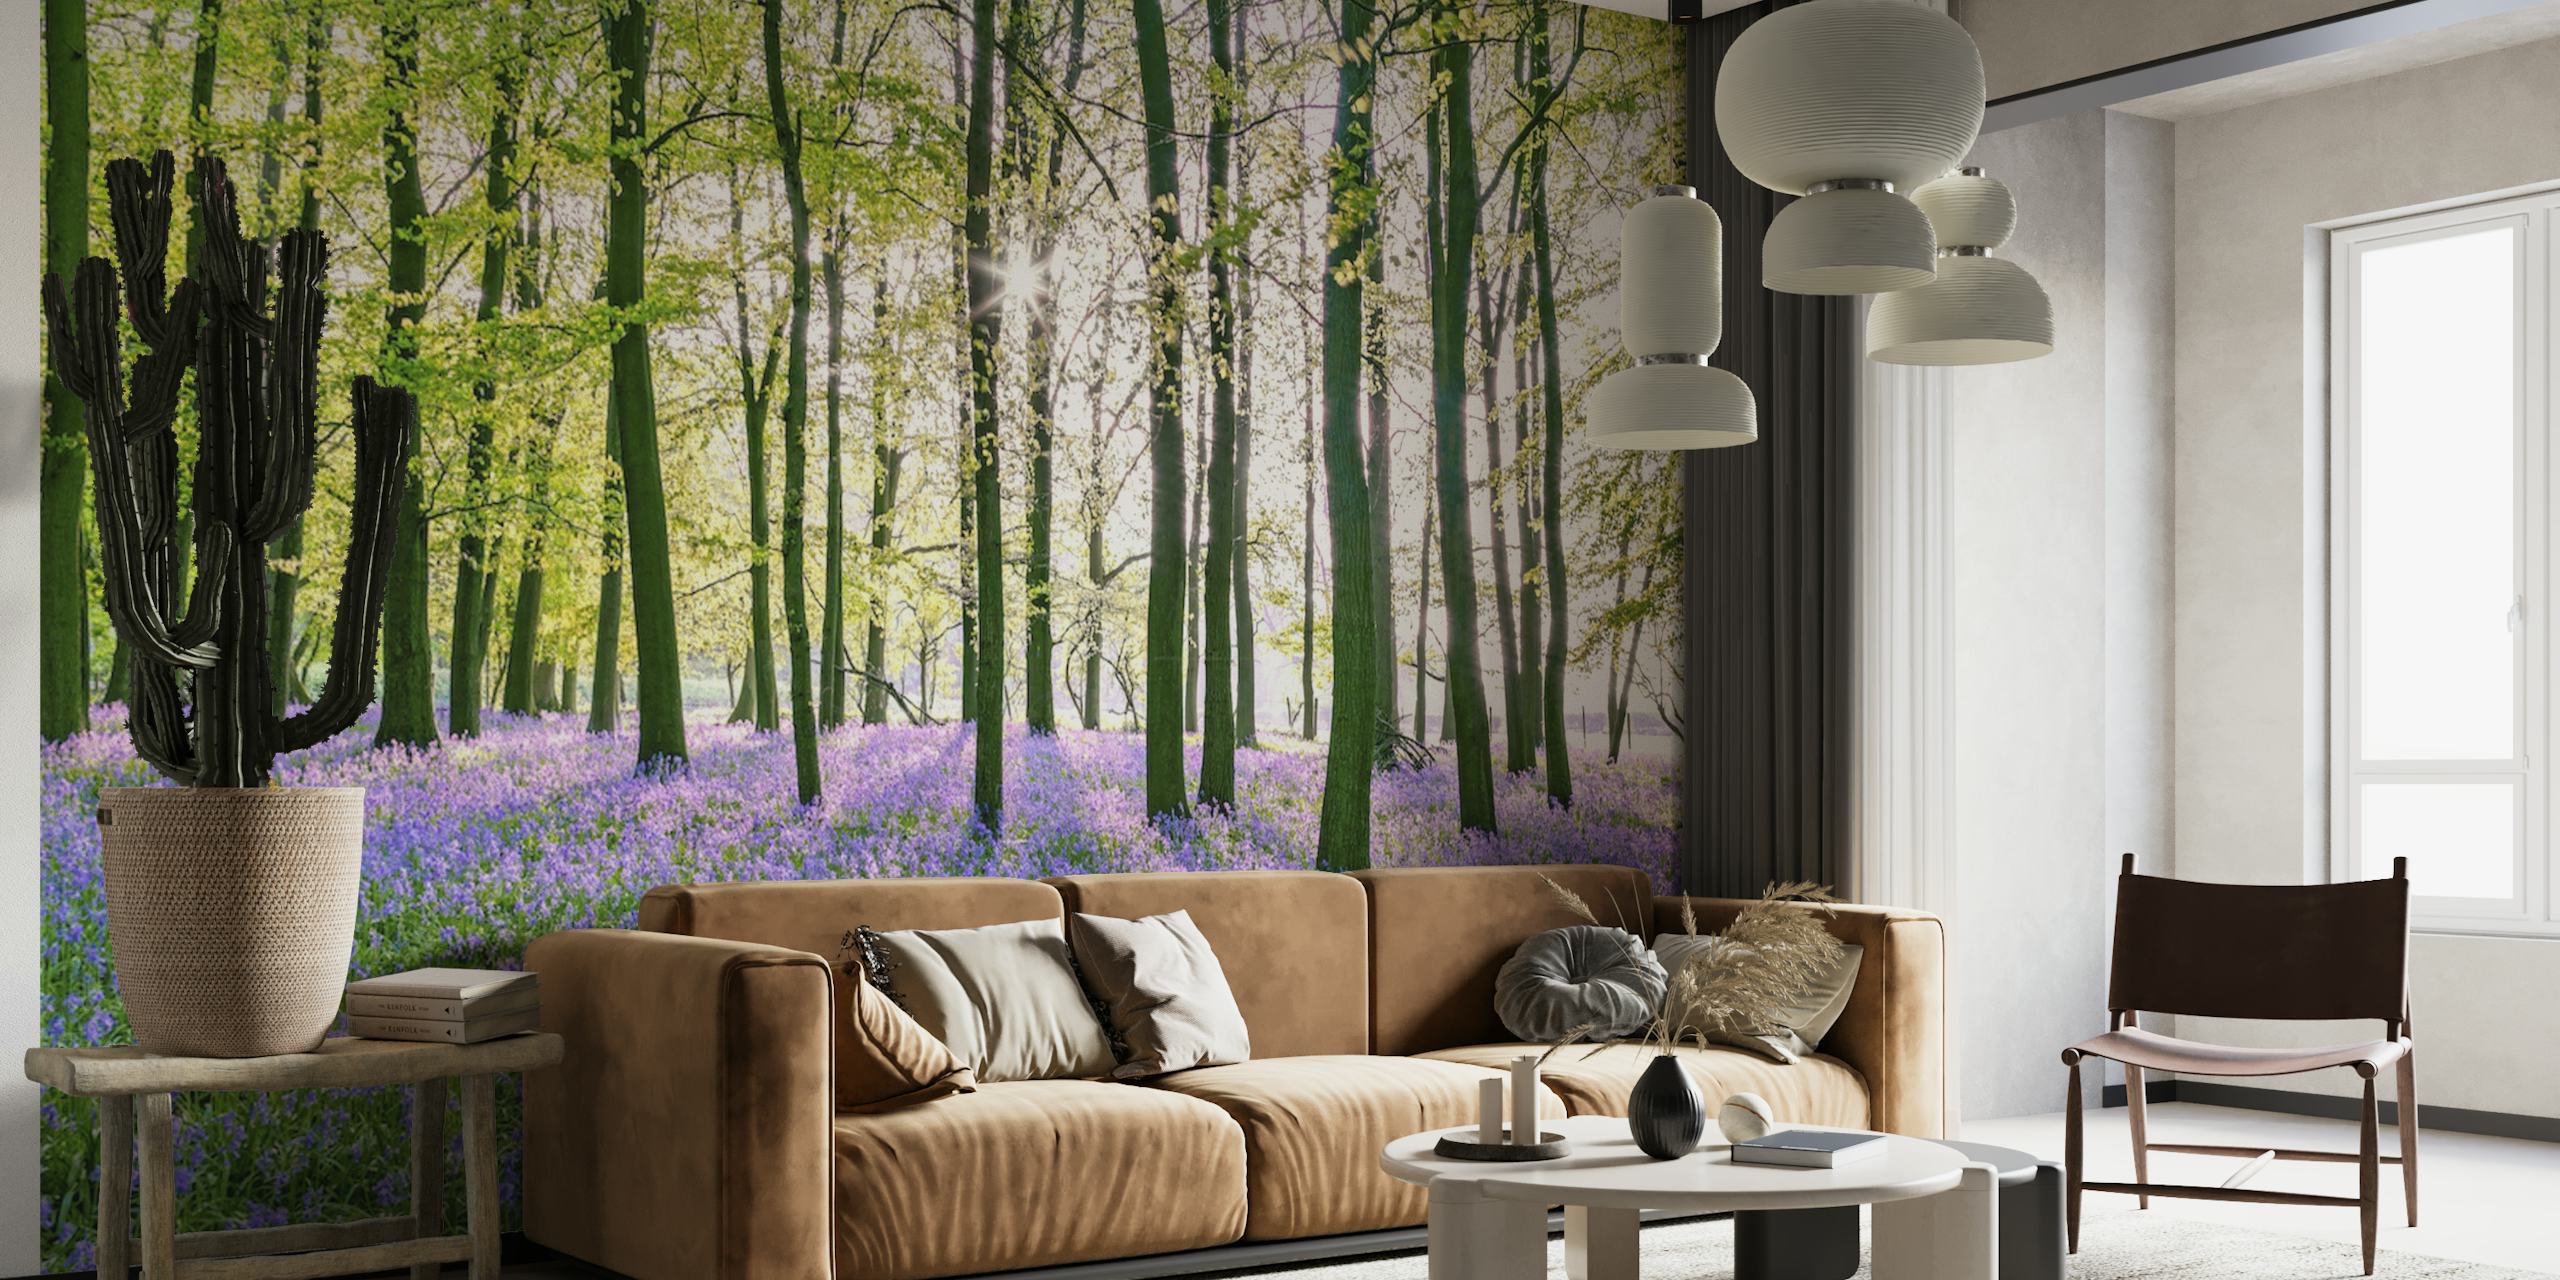 Nástěnná fototapeta s klidným lesem se zvonkem se svěže zeleným baldachýnem a zářivými fialovými květy pokrývajícími lesní podlahu.